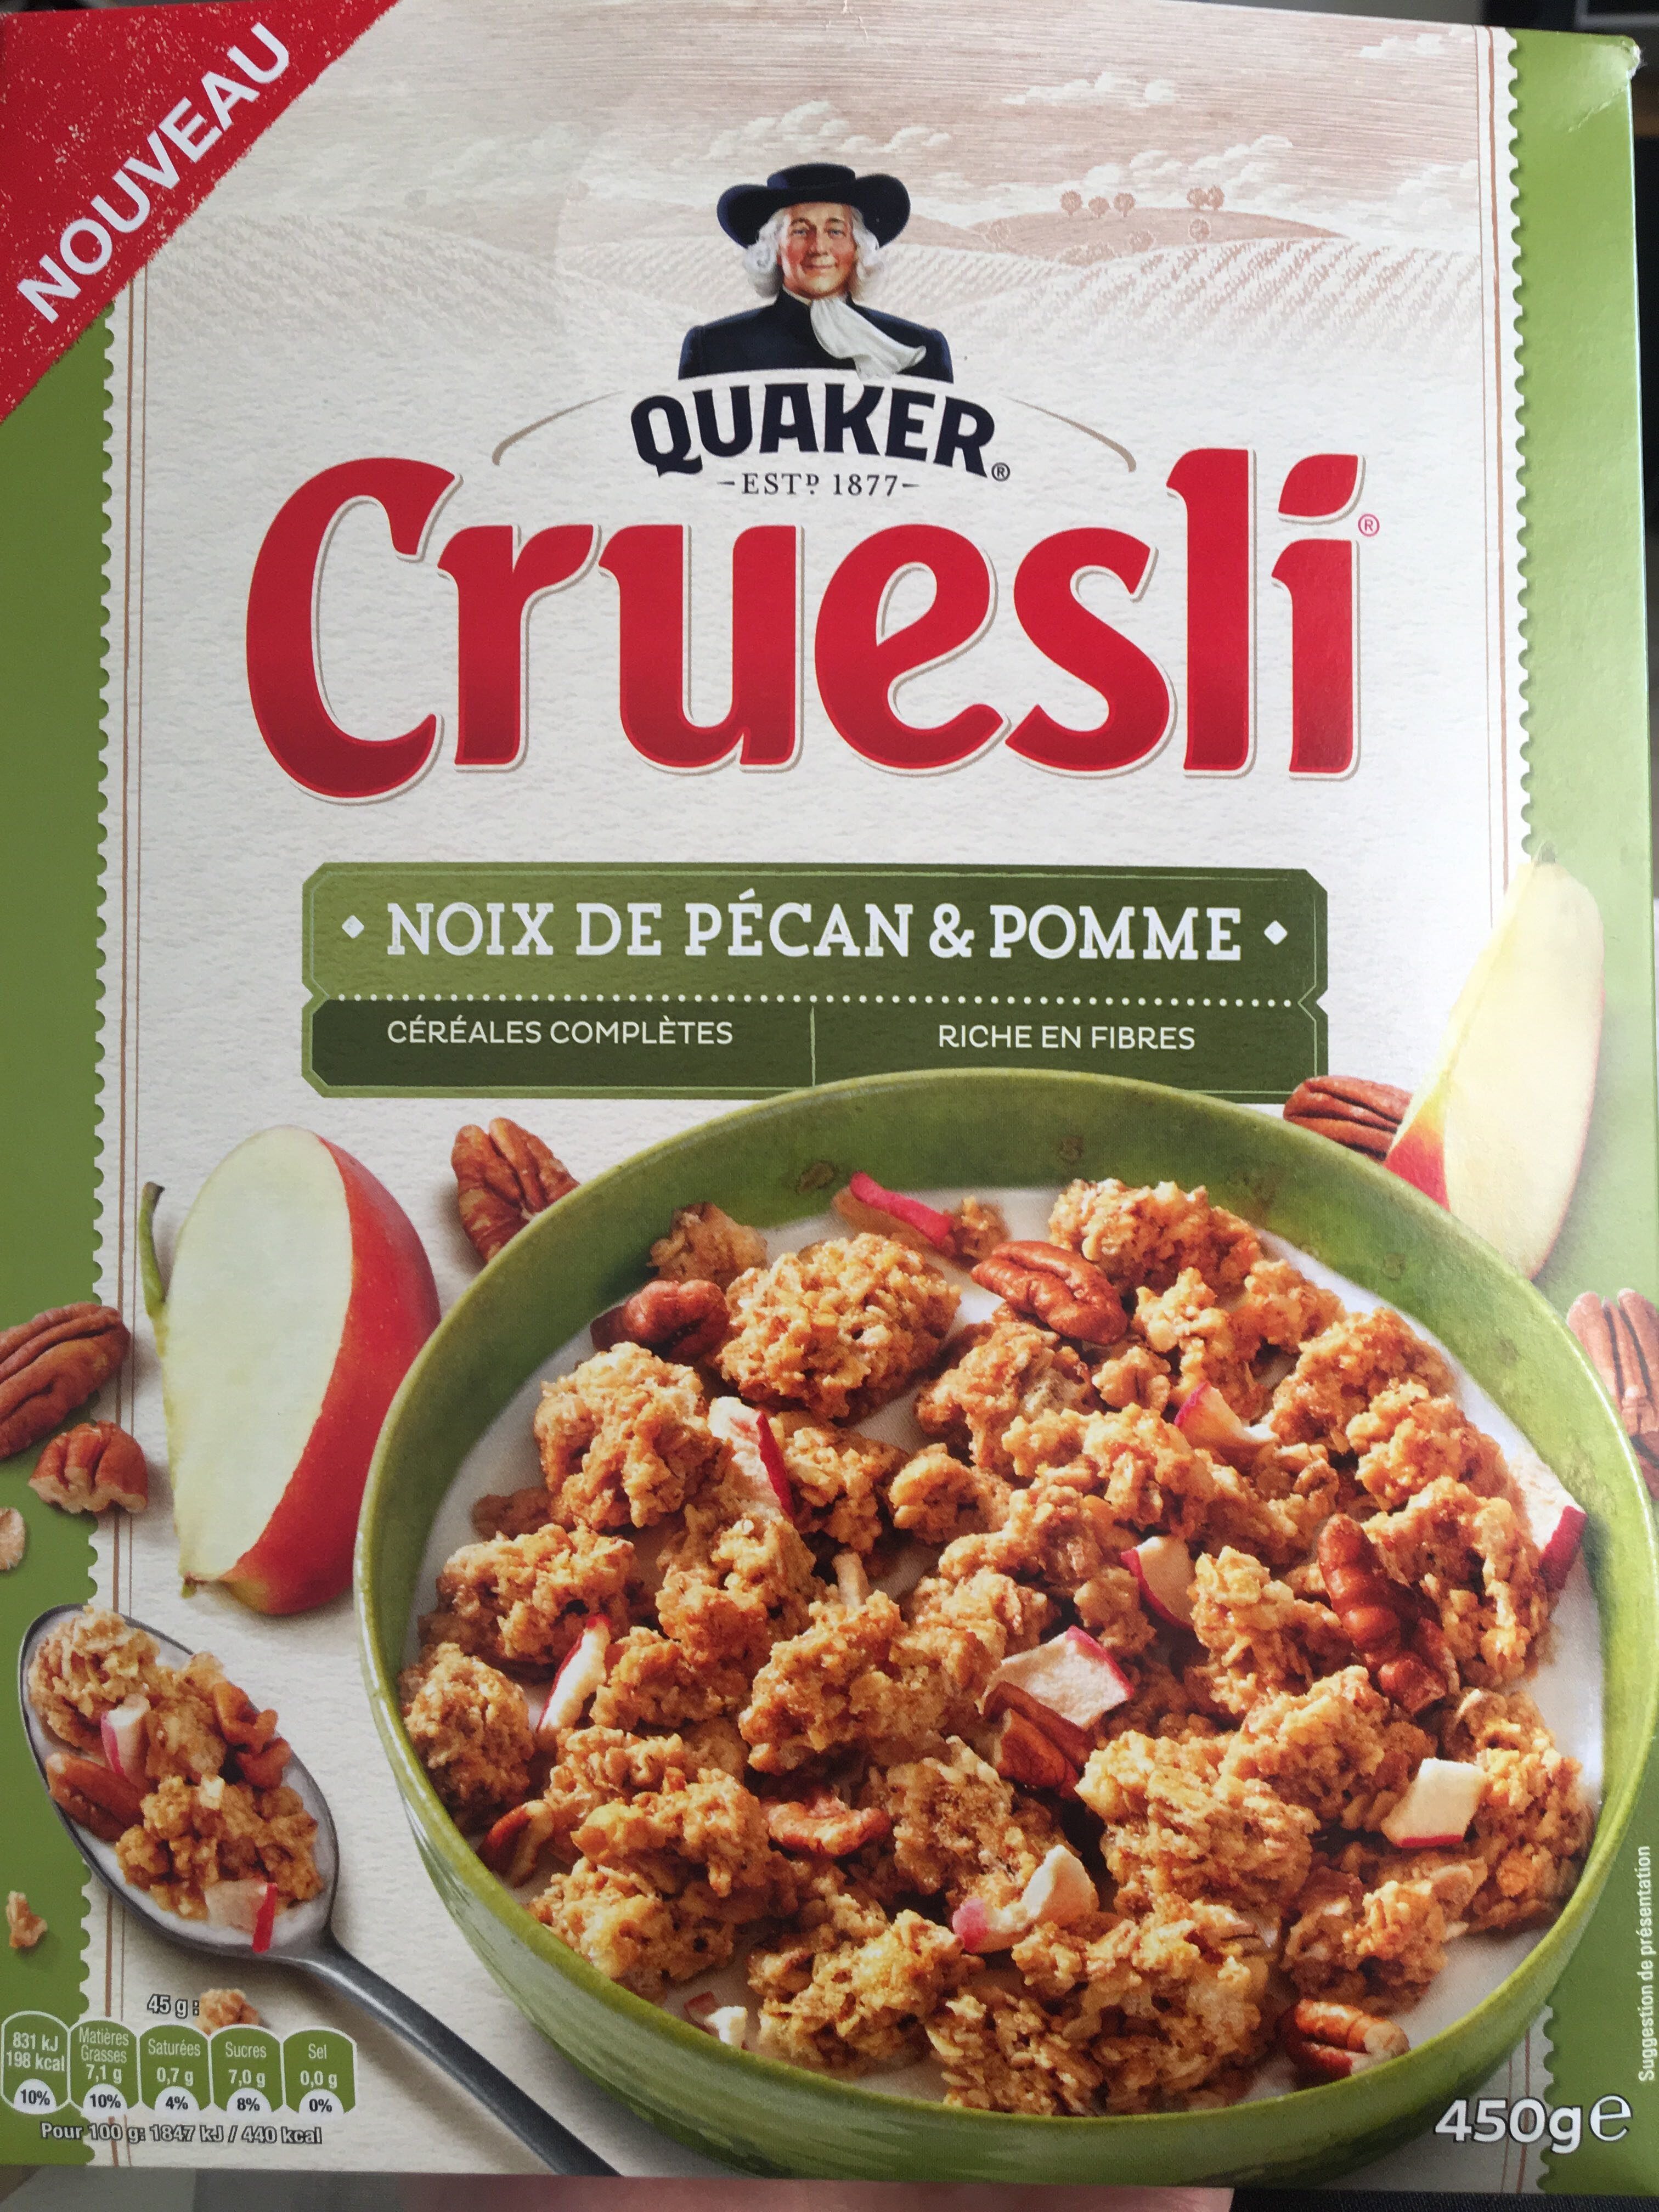 Cruesli - Noix de pécan & pomme - Produkt - fr